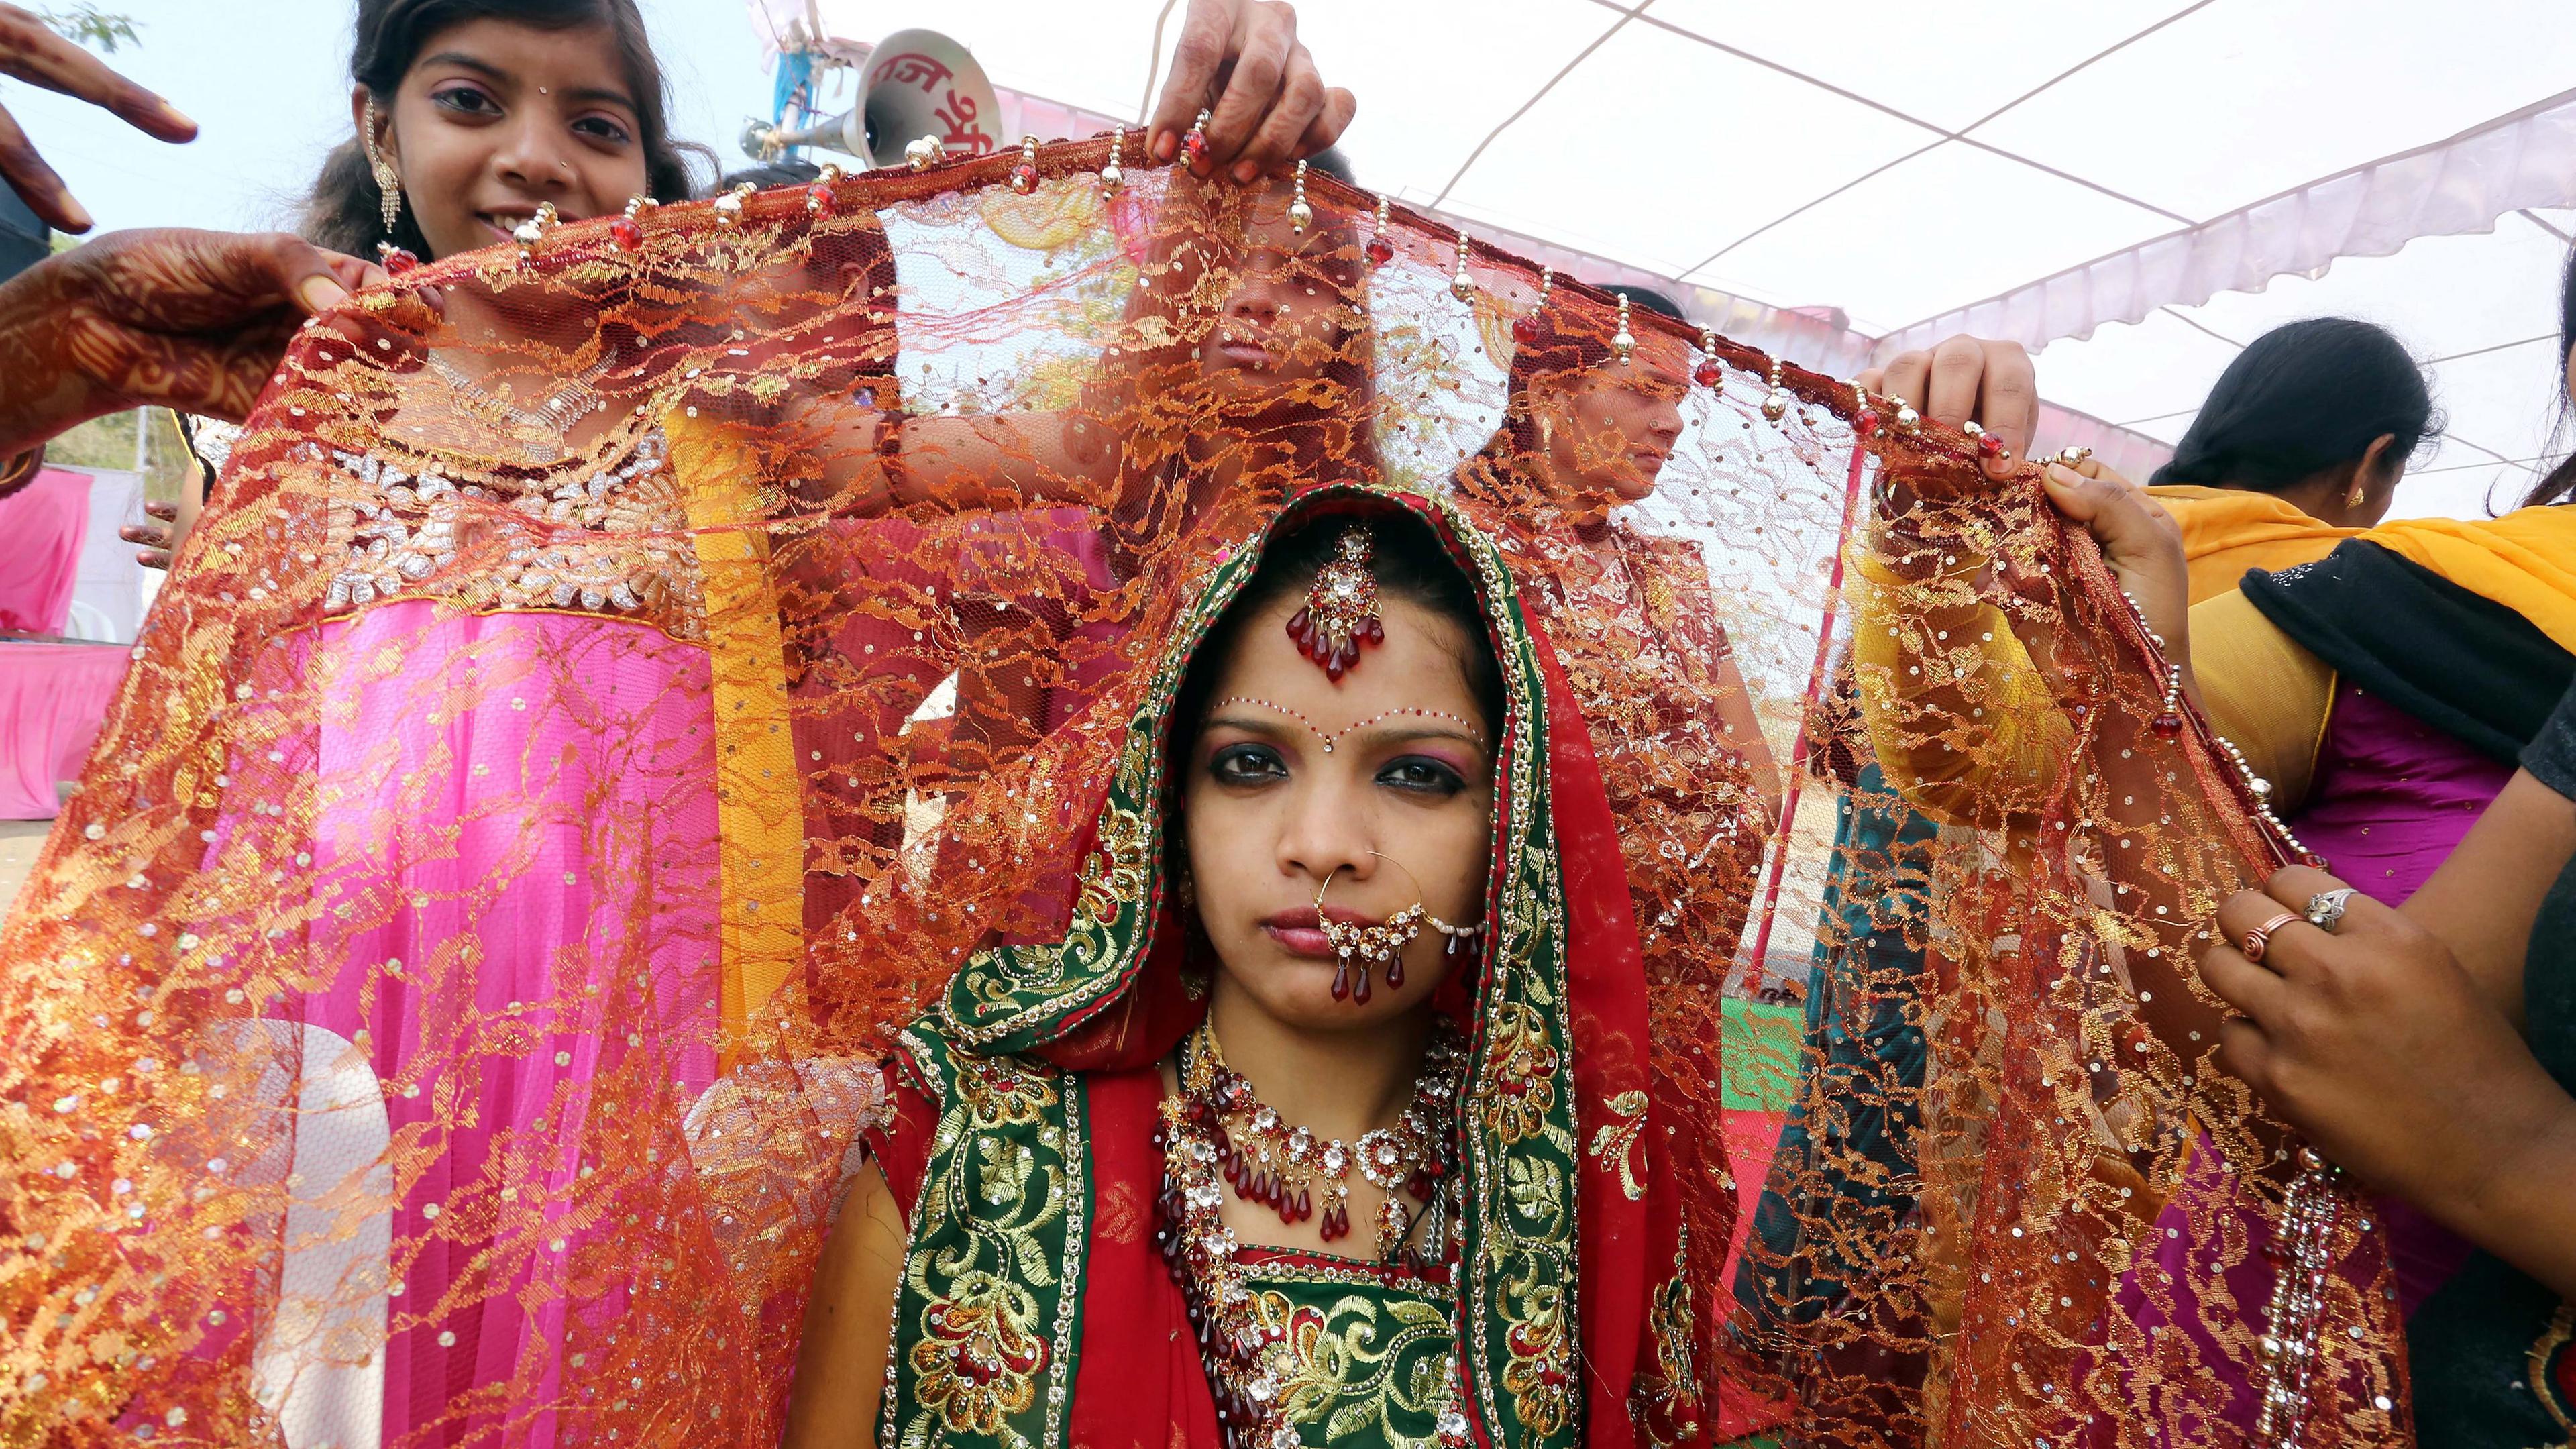 Eine junge Braut nimmt an einer Massenhochzeitszeremonie teil, aufgenommen am 24.02.2014